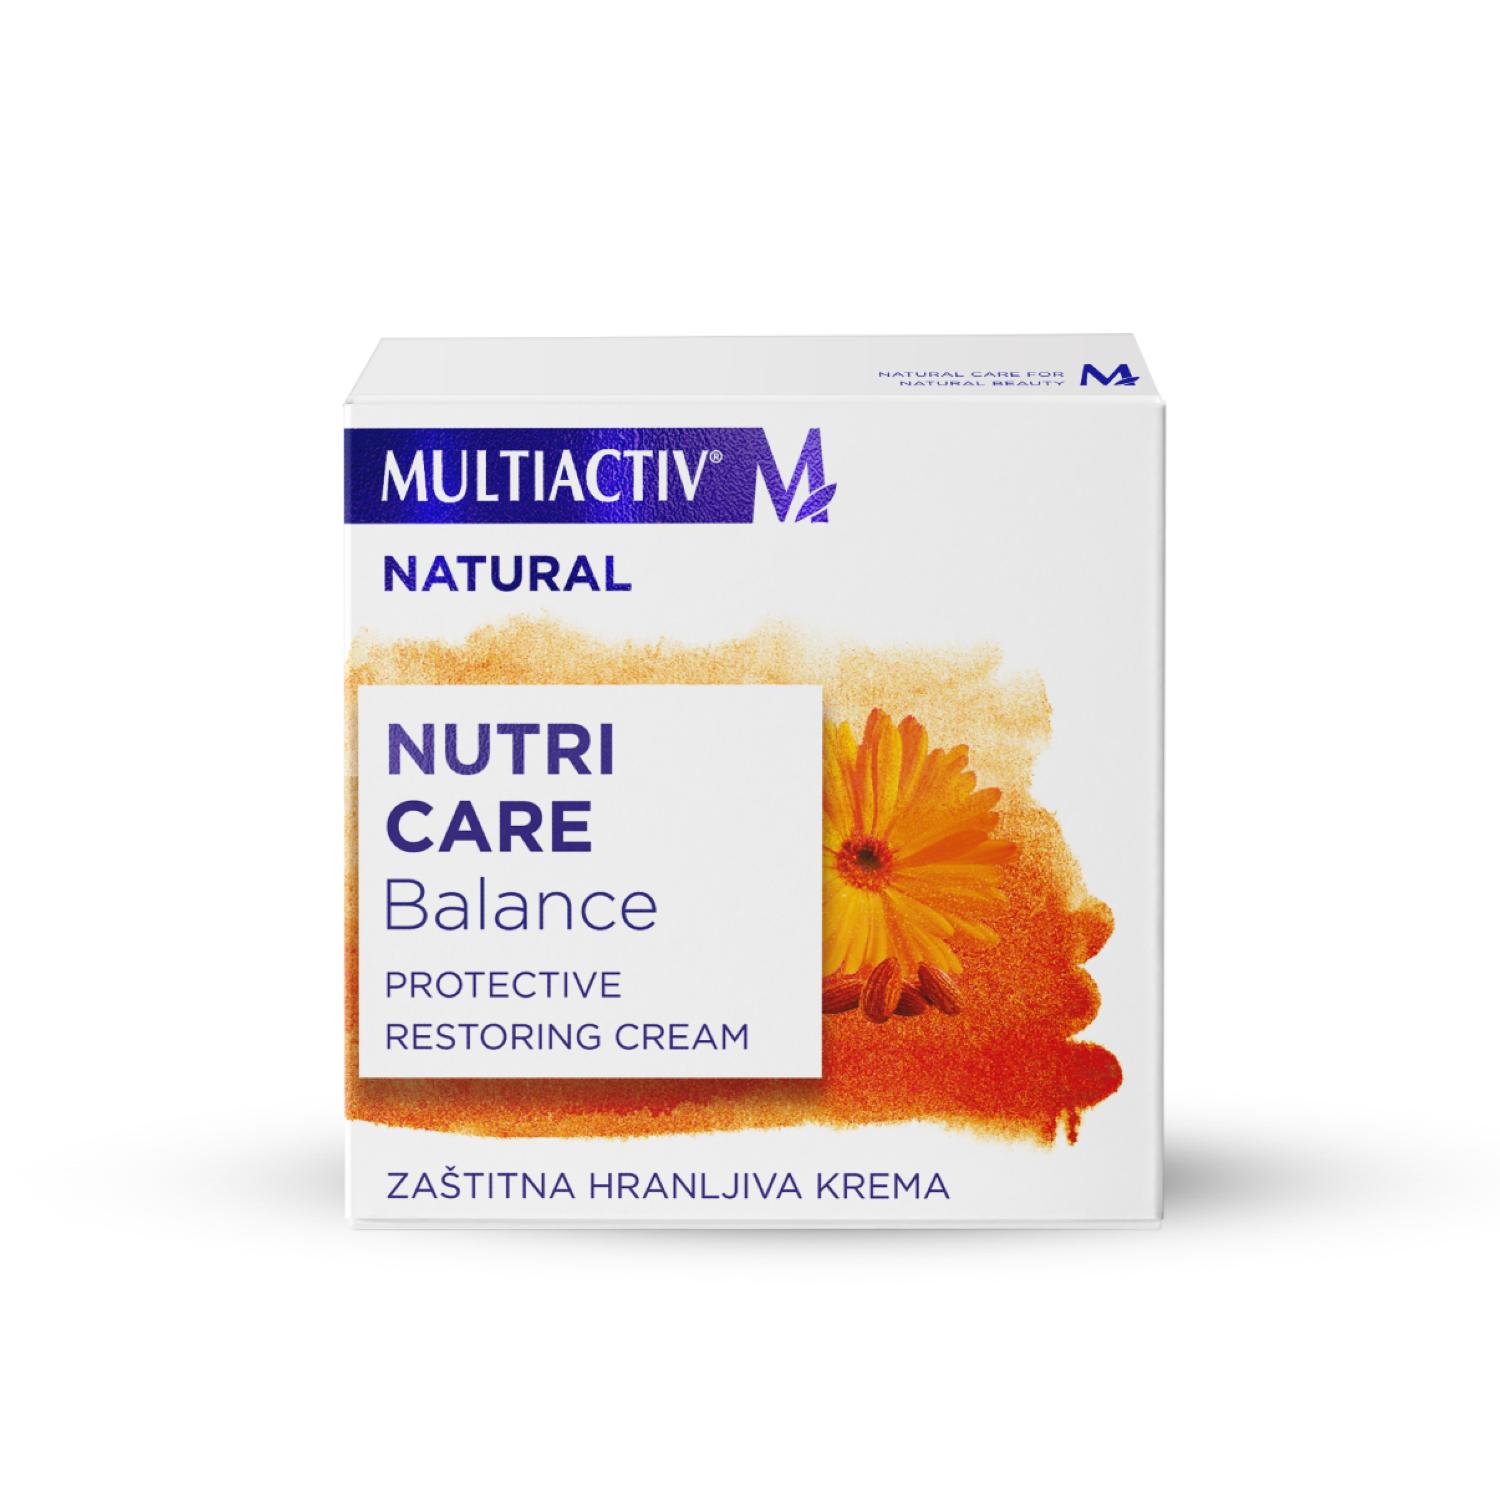 MULTIACTIV Zaštitna hranljiva krema Natural Balance 50 ml